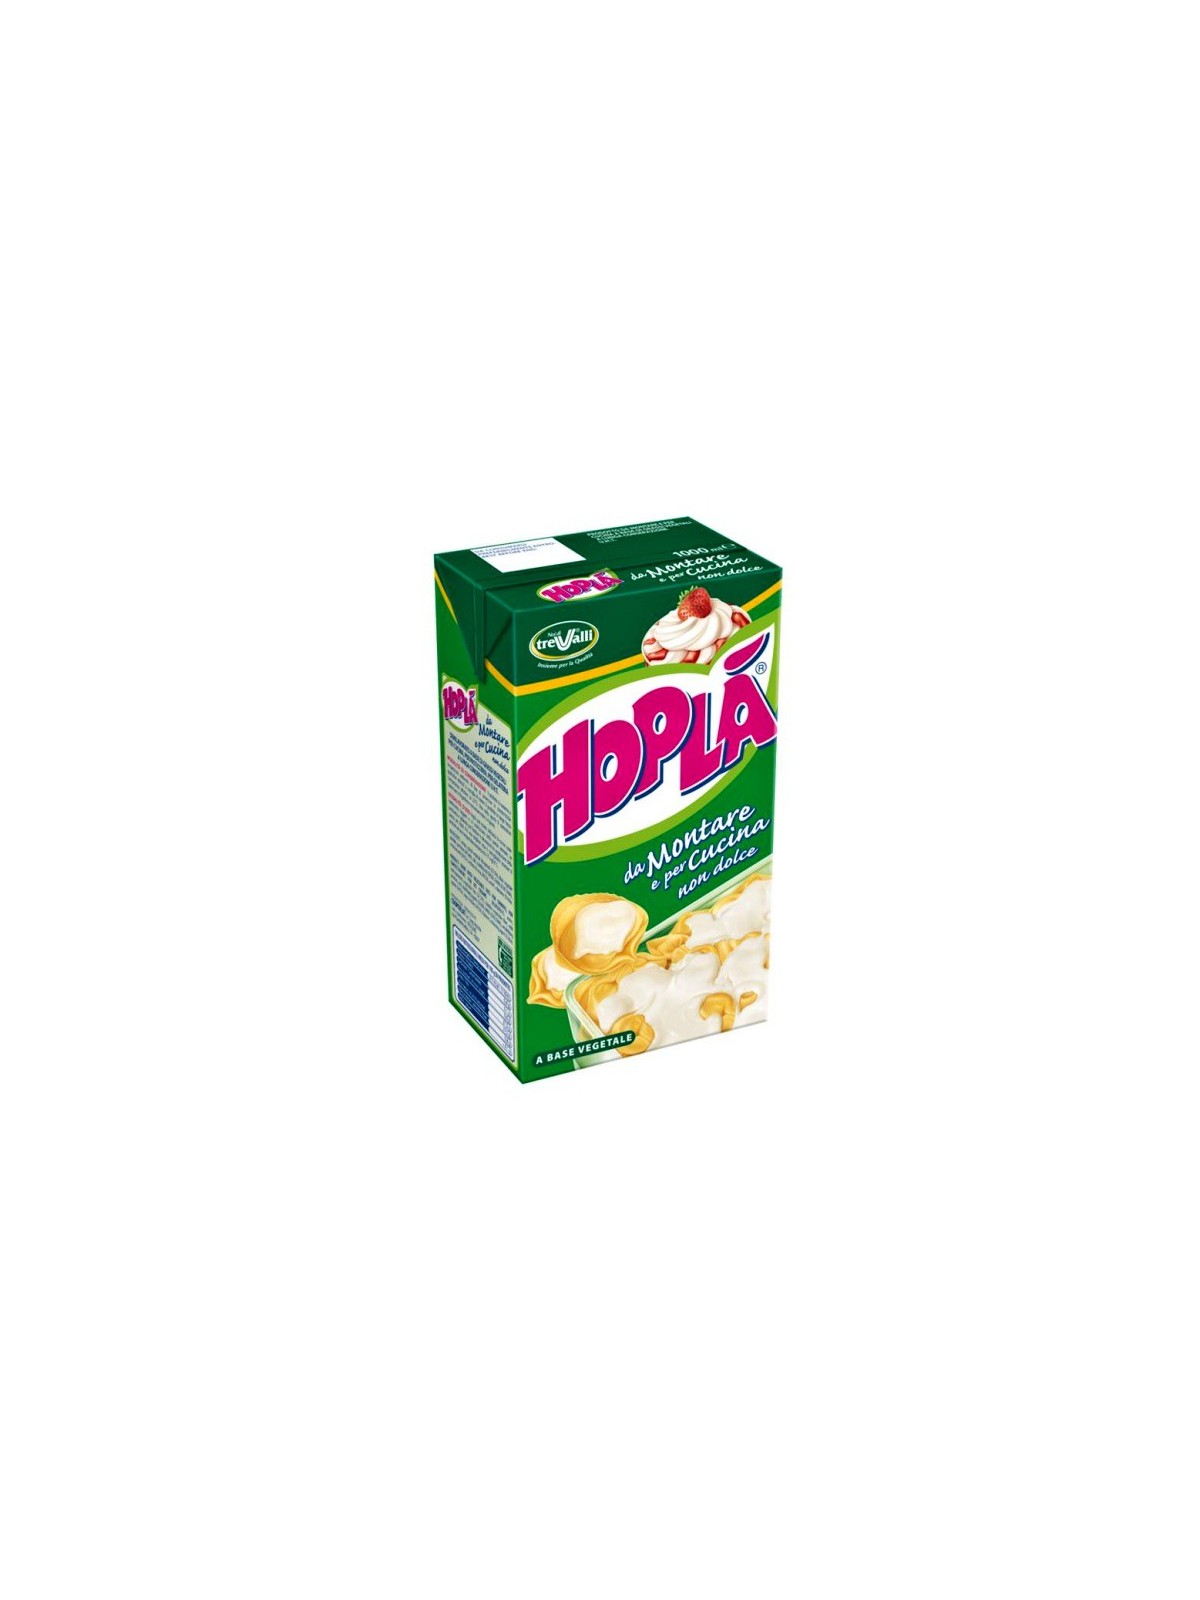 HOPLÁ NEUTRAL whipping cream - 1l